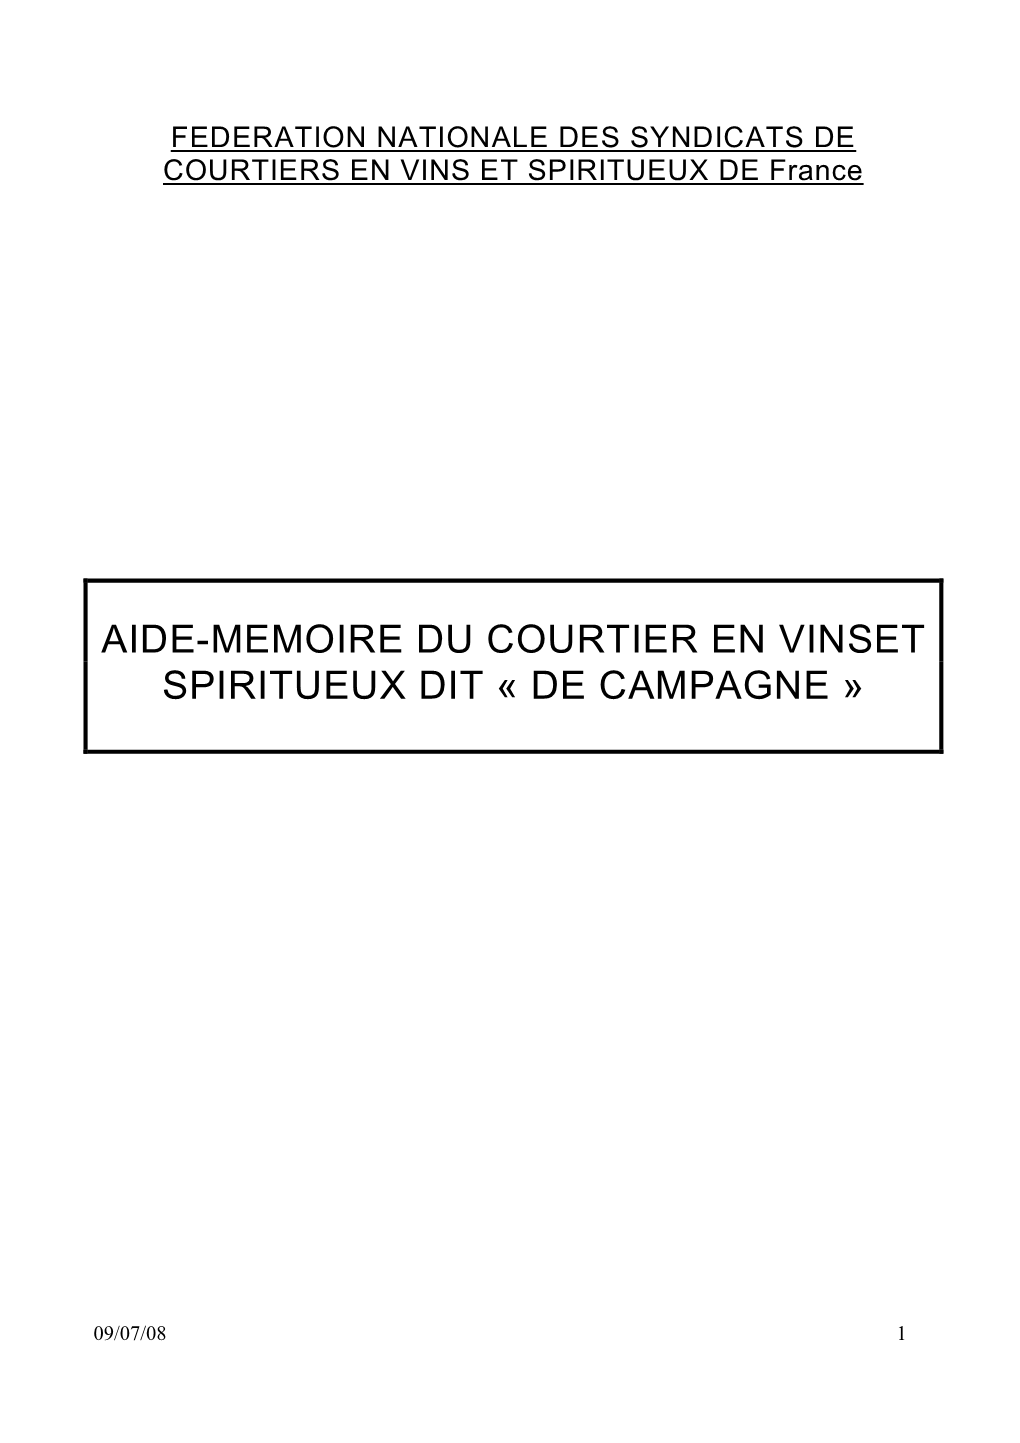 Aide-Memoire Du Courtier En Vinset Spiritueux Dit « De Campagne »